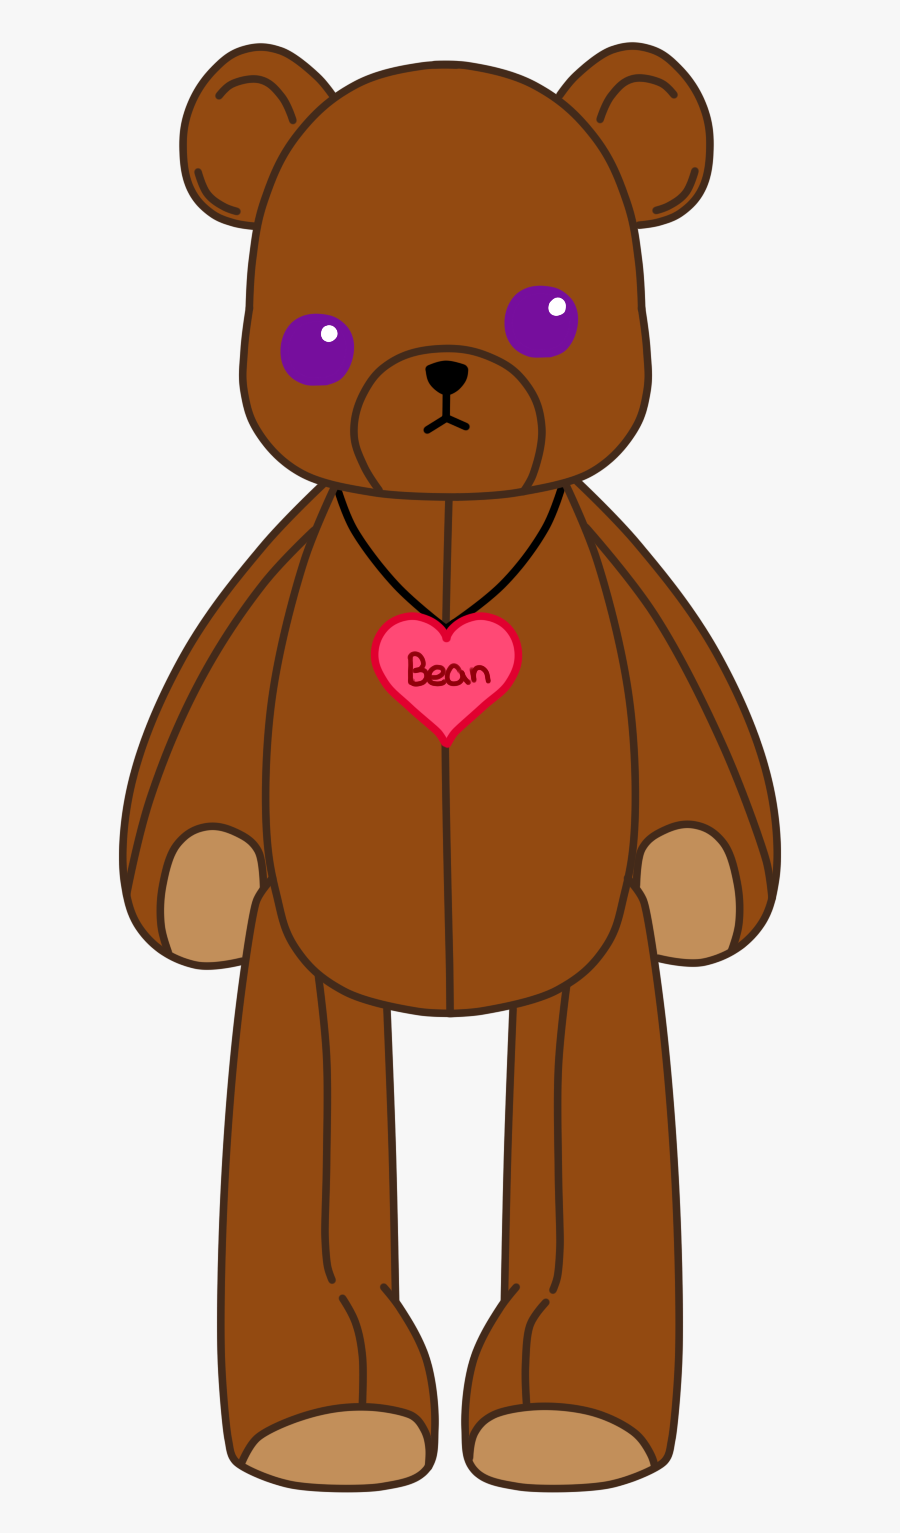 Our Love Child Bean The Bear By Th3randomartist - Cartoon, Transparent Clipart